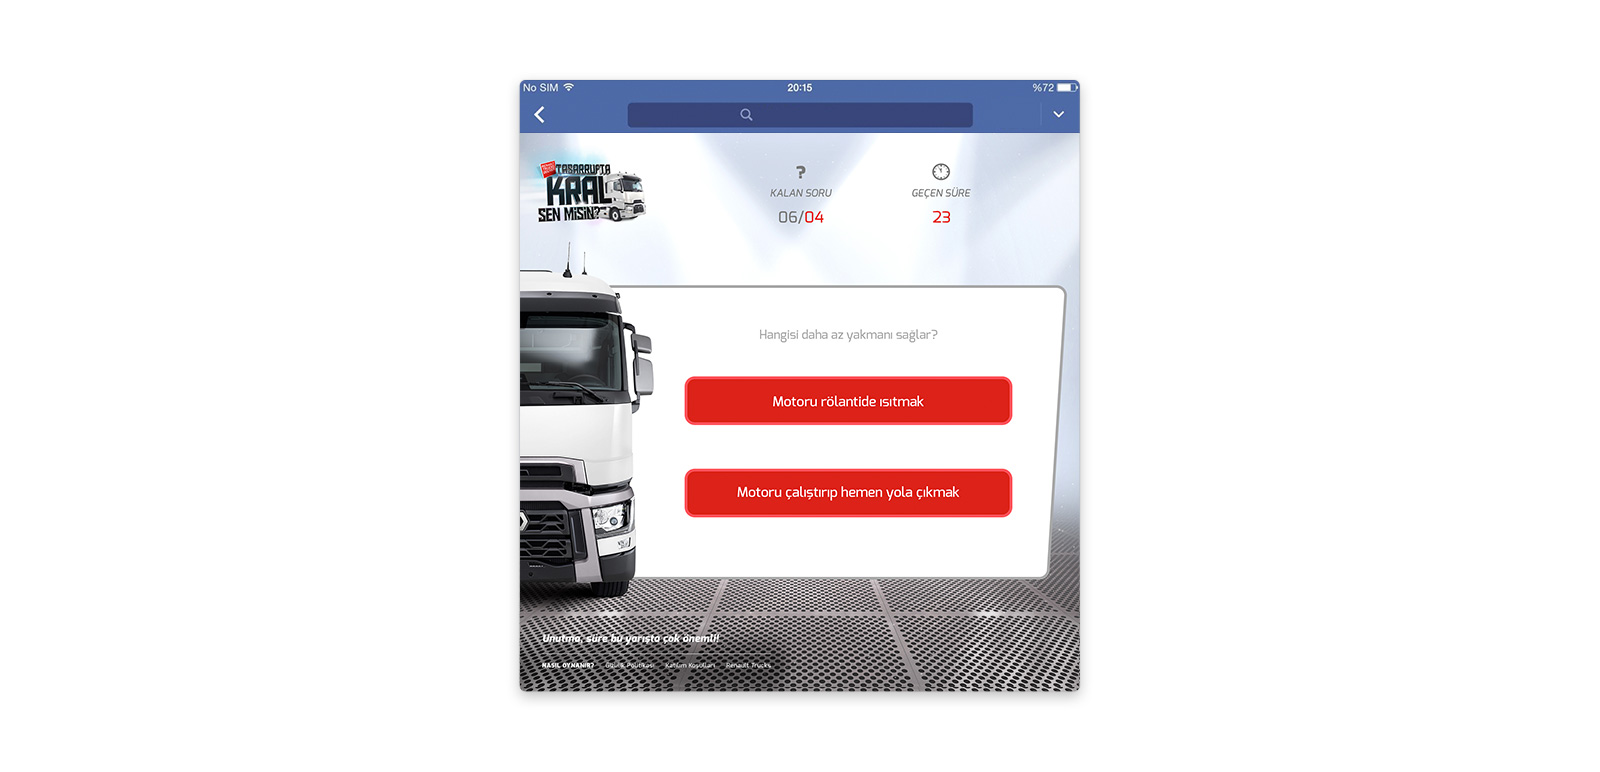 Renault Trucks Turkey - Tasarrufta Kral Sen Misin? FB App 2